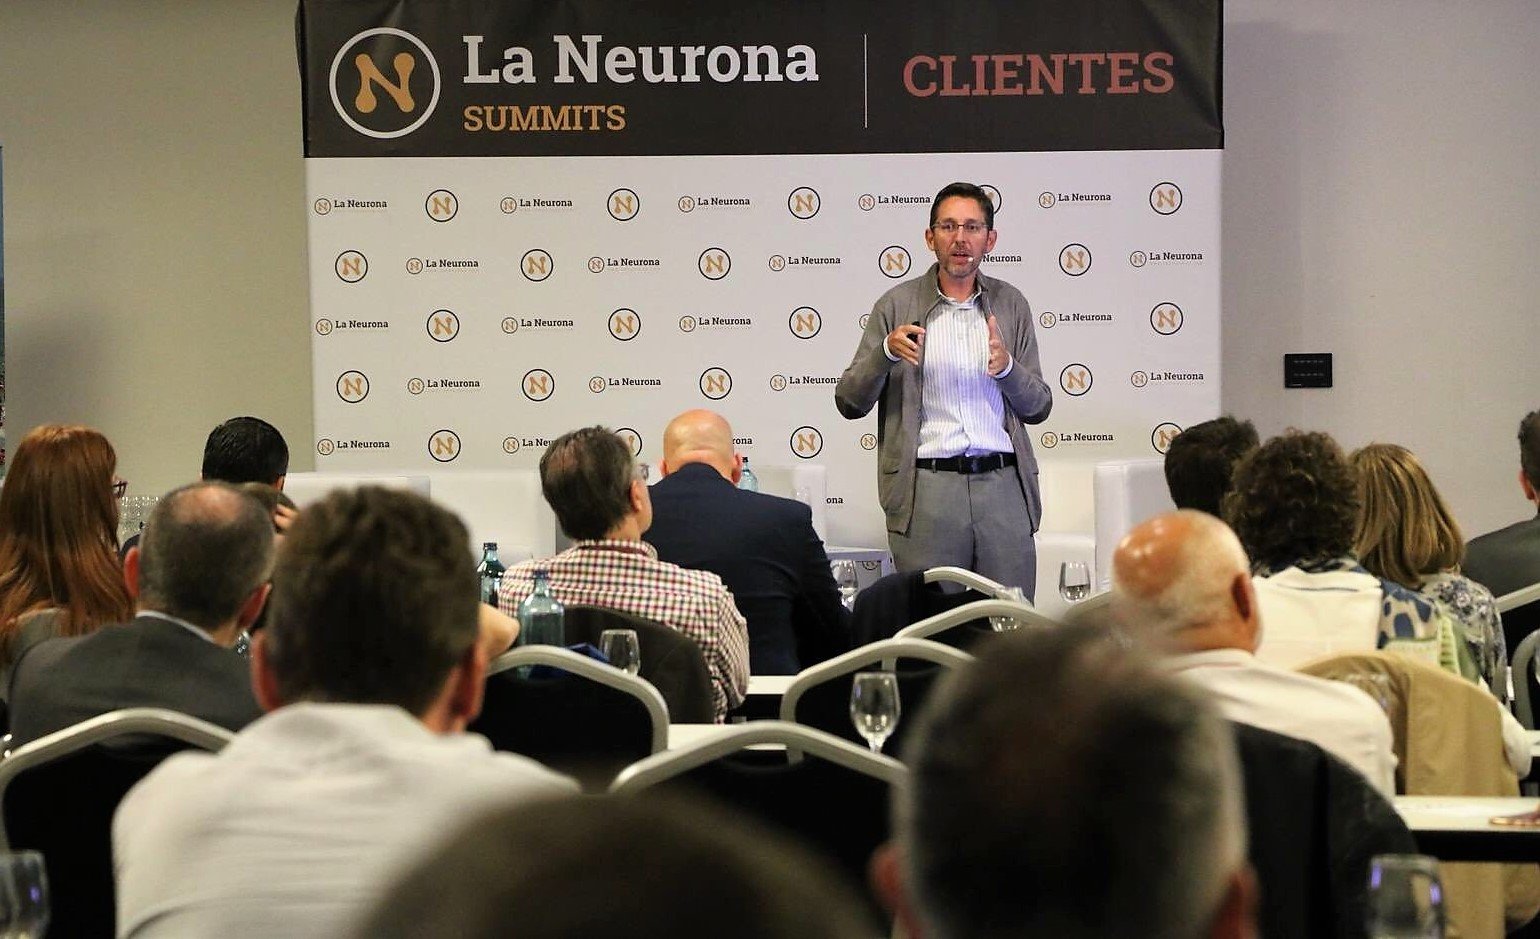 La Neurona Summit Clientes Barcelona - Ponencia sobre Marketing en un mundo de Clientes Inteligentes